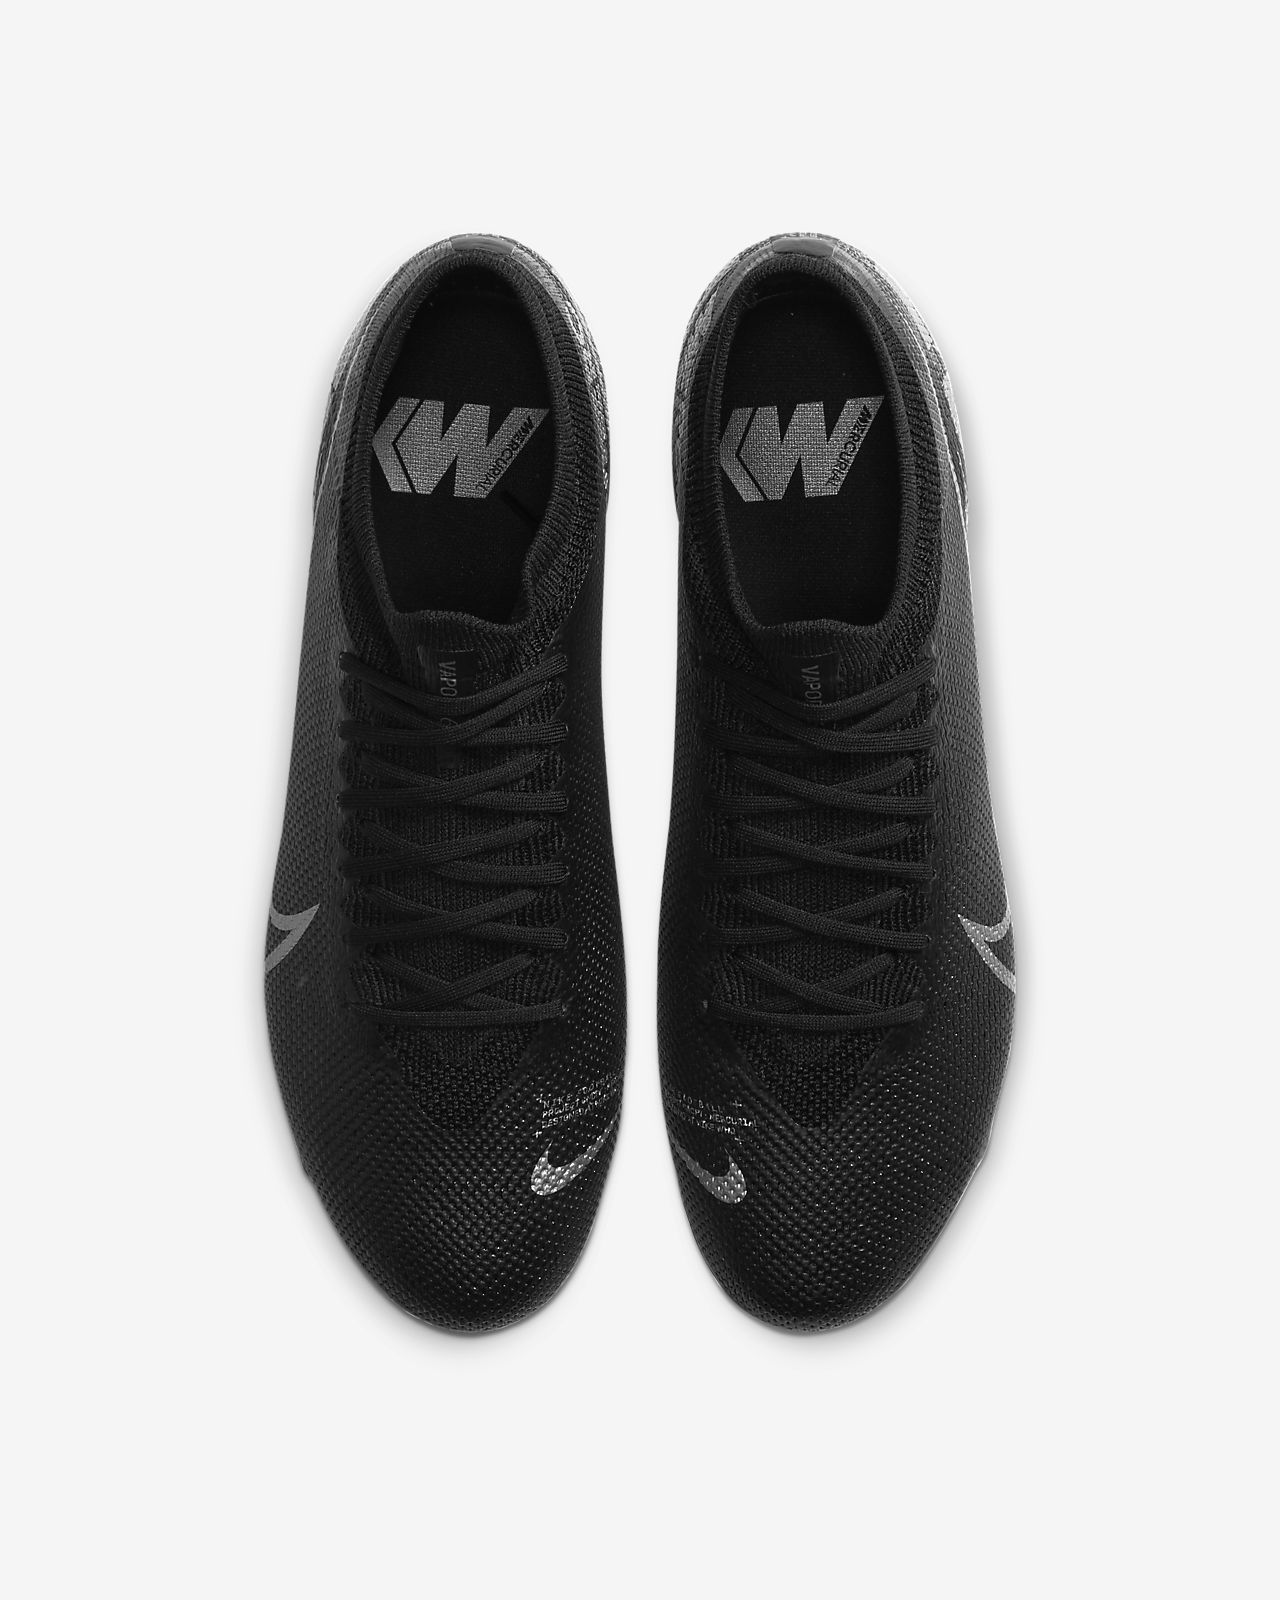 Nike Mercurial Vapor 13 Elite FG Men 's Soccer Shoes.